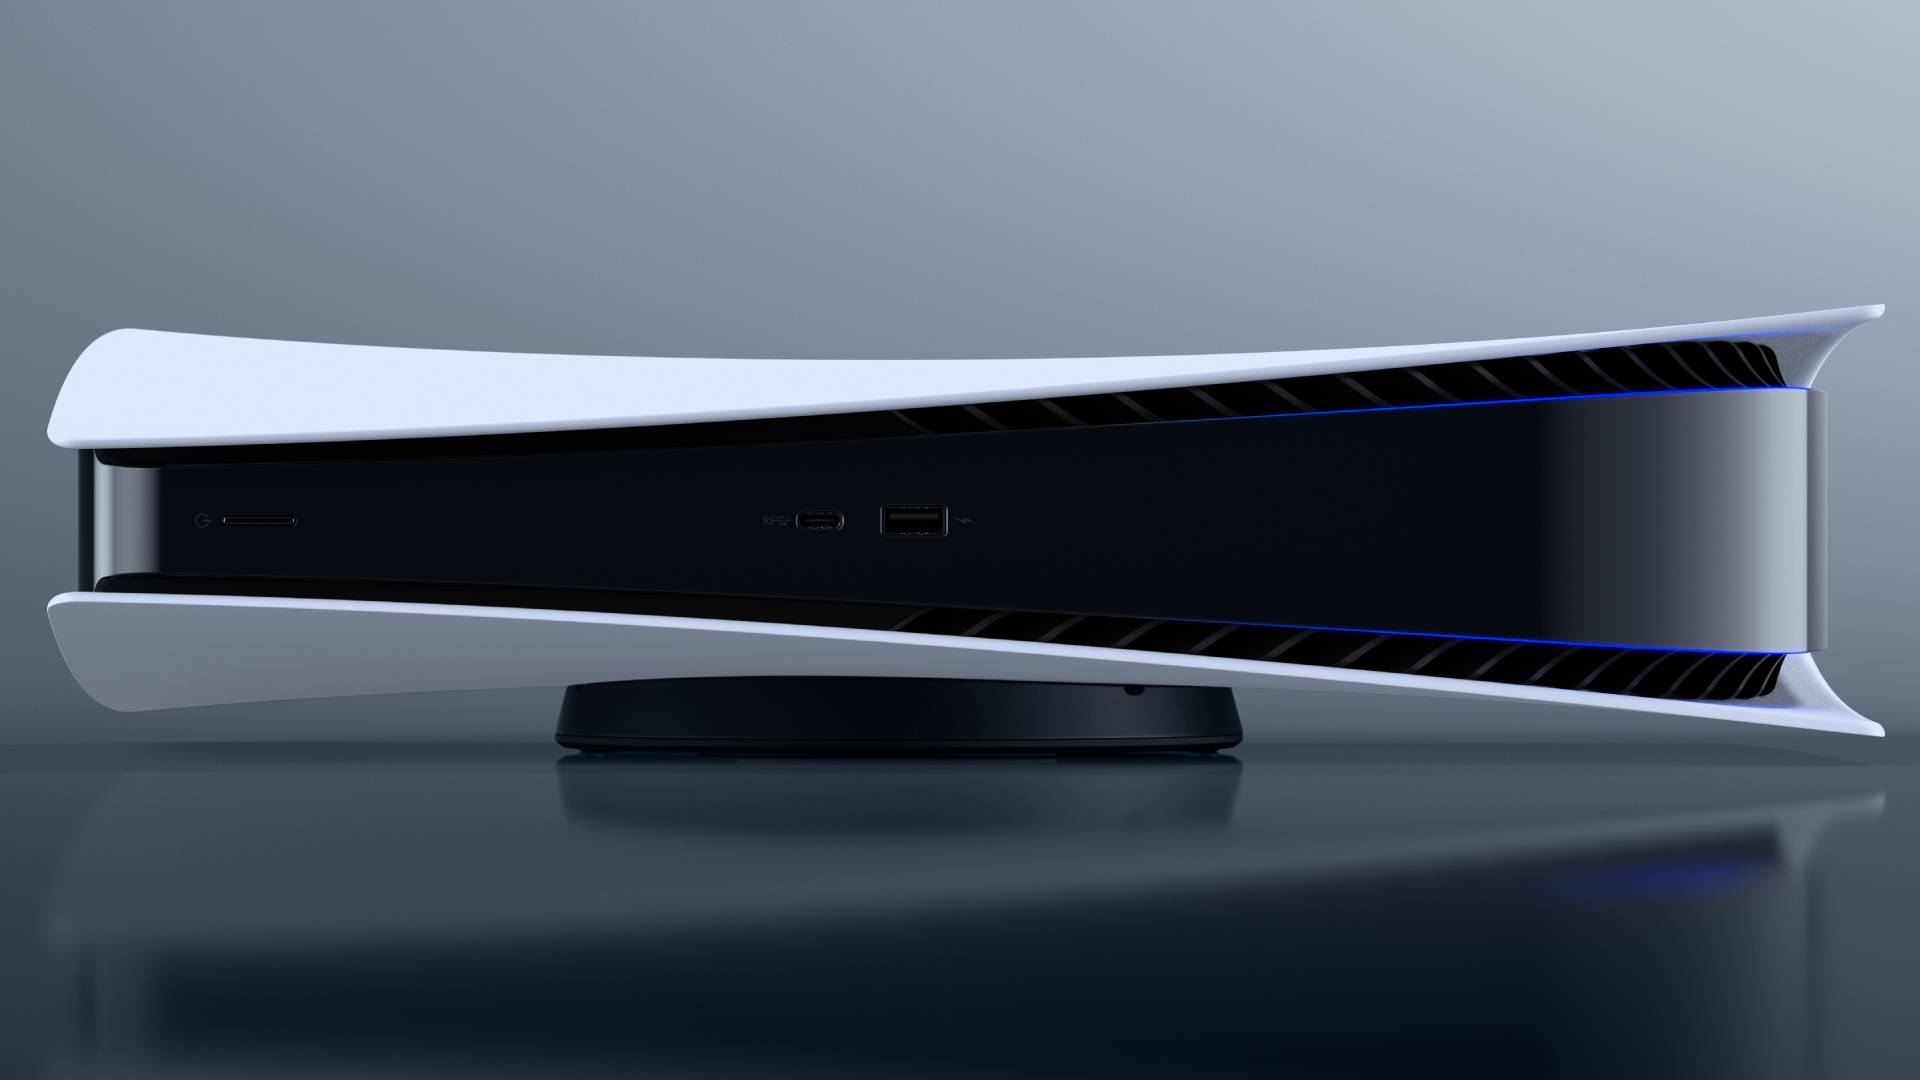 PS5 Slim: когда мы увидим более компактную и легкую PlayStation 5?